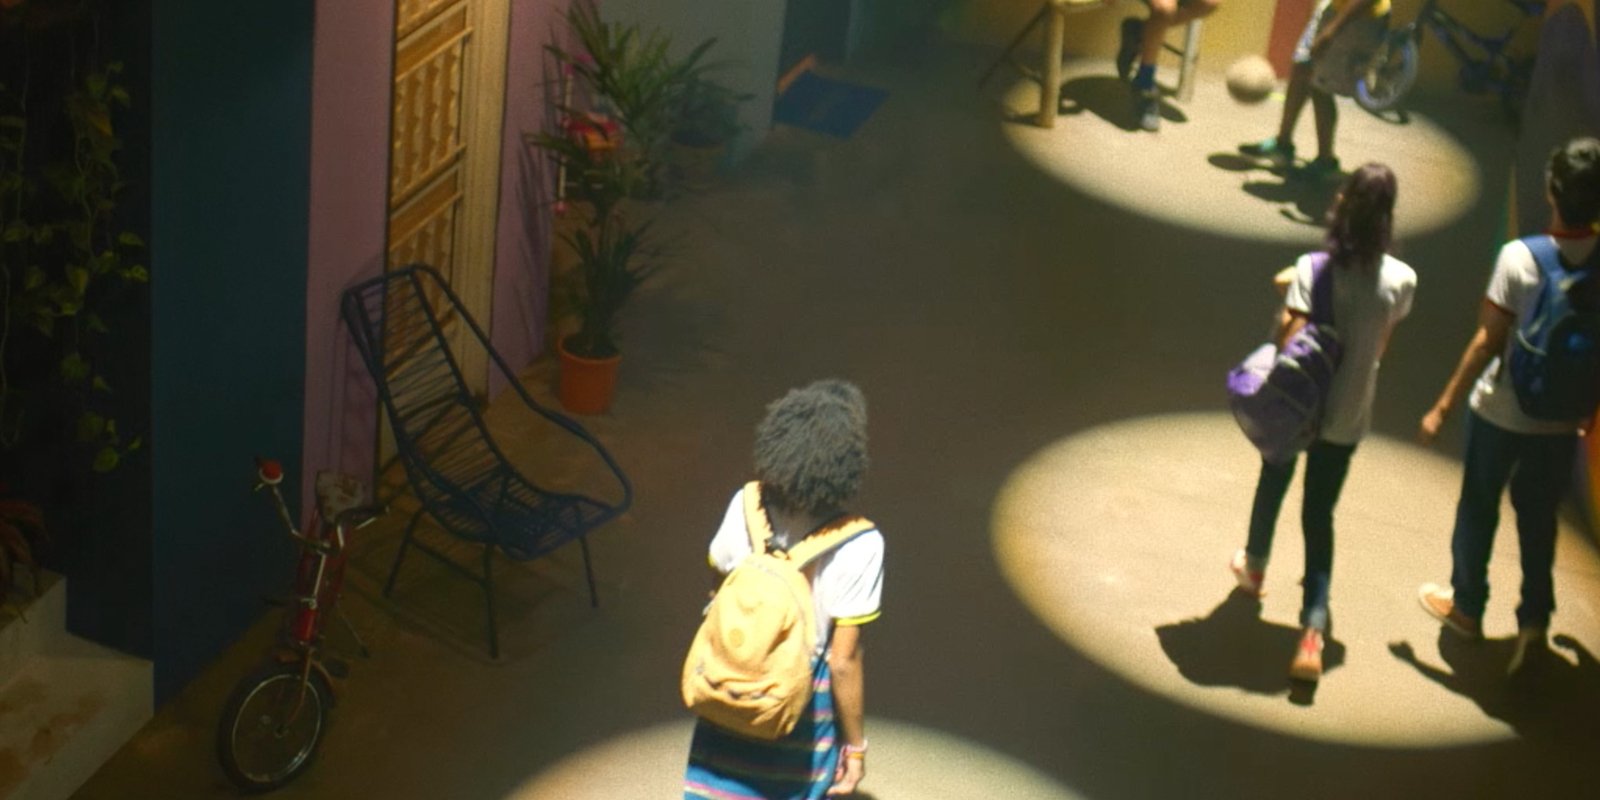 Featured image for “Segurança nas escolas”